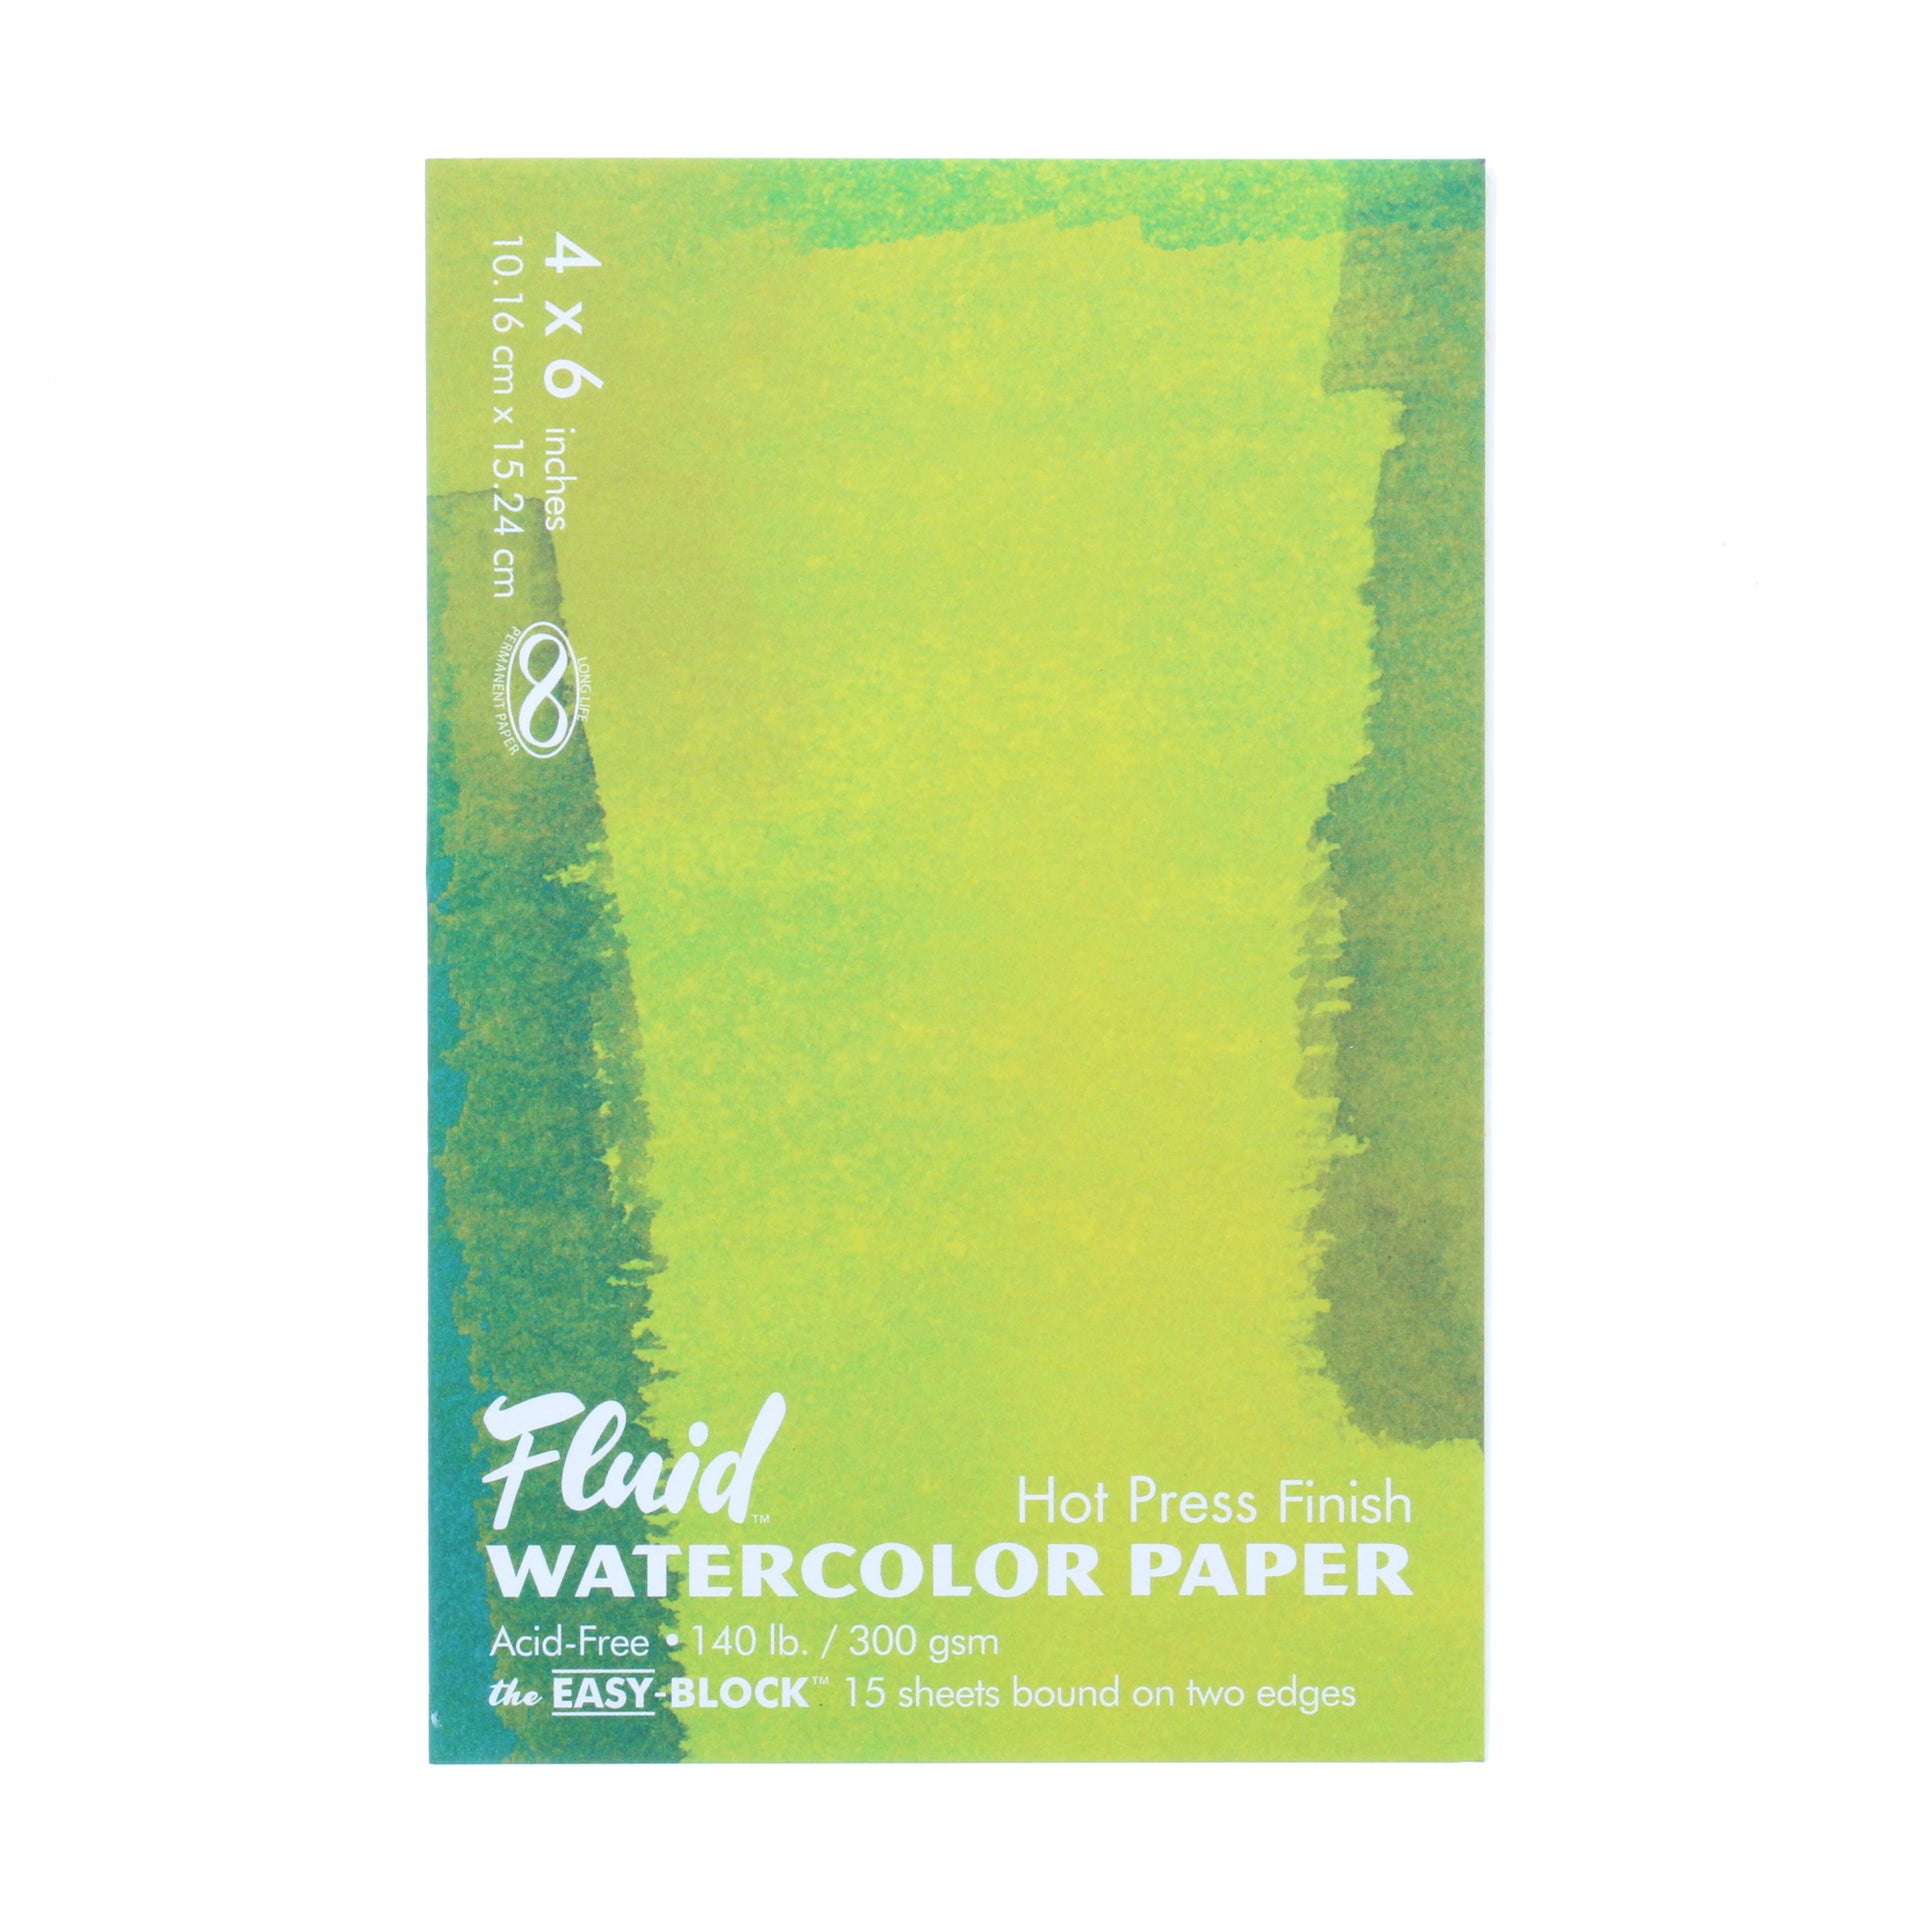 Fluid Watercolor Paper Block - Cold-Press - 12 x 16 - 15 Shts.